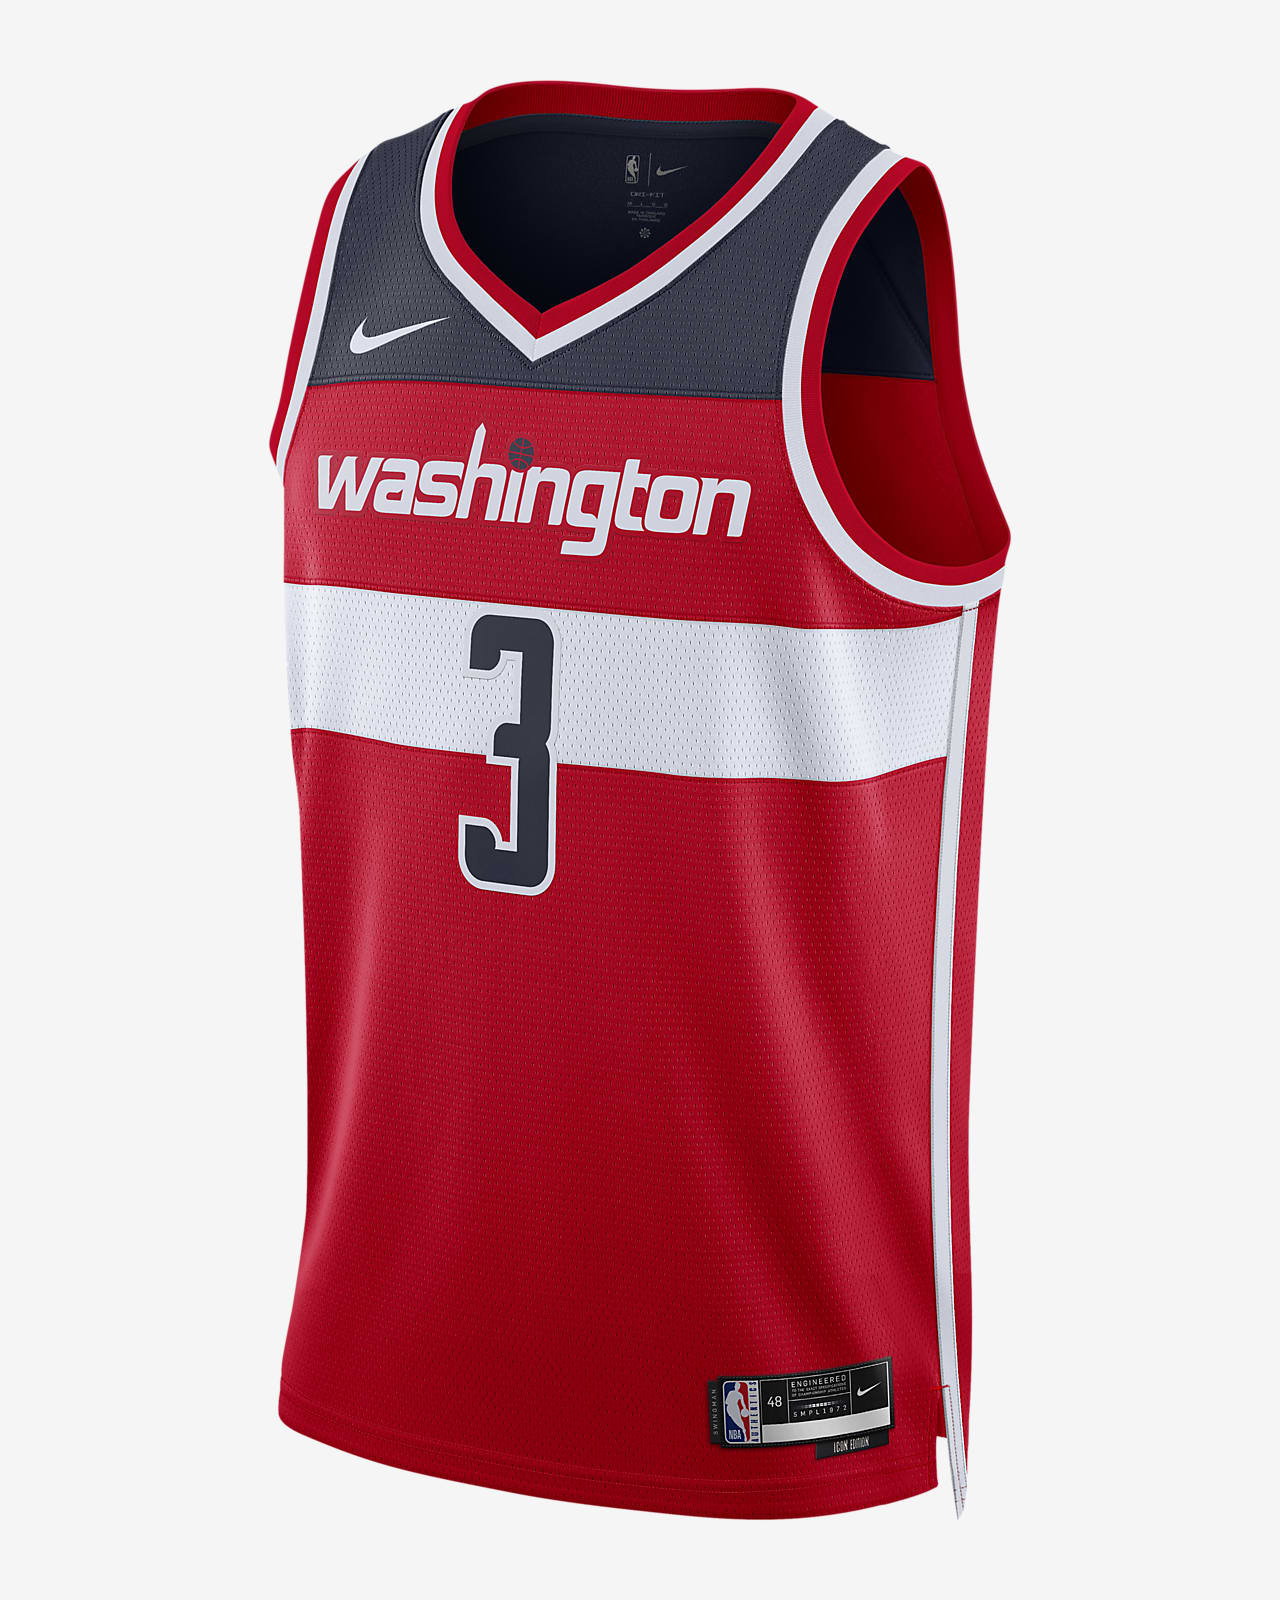 Washington Unveils New Nike Uniforms - University of Washington